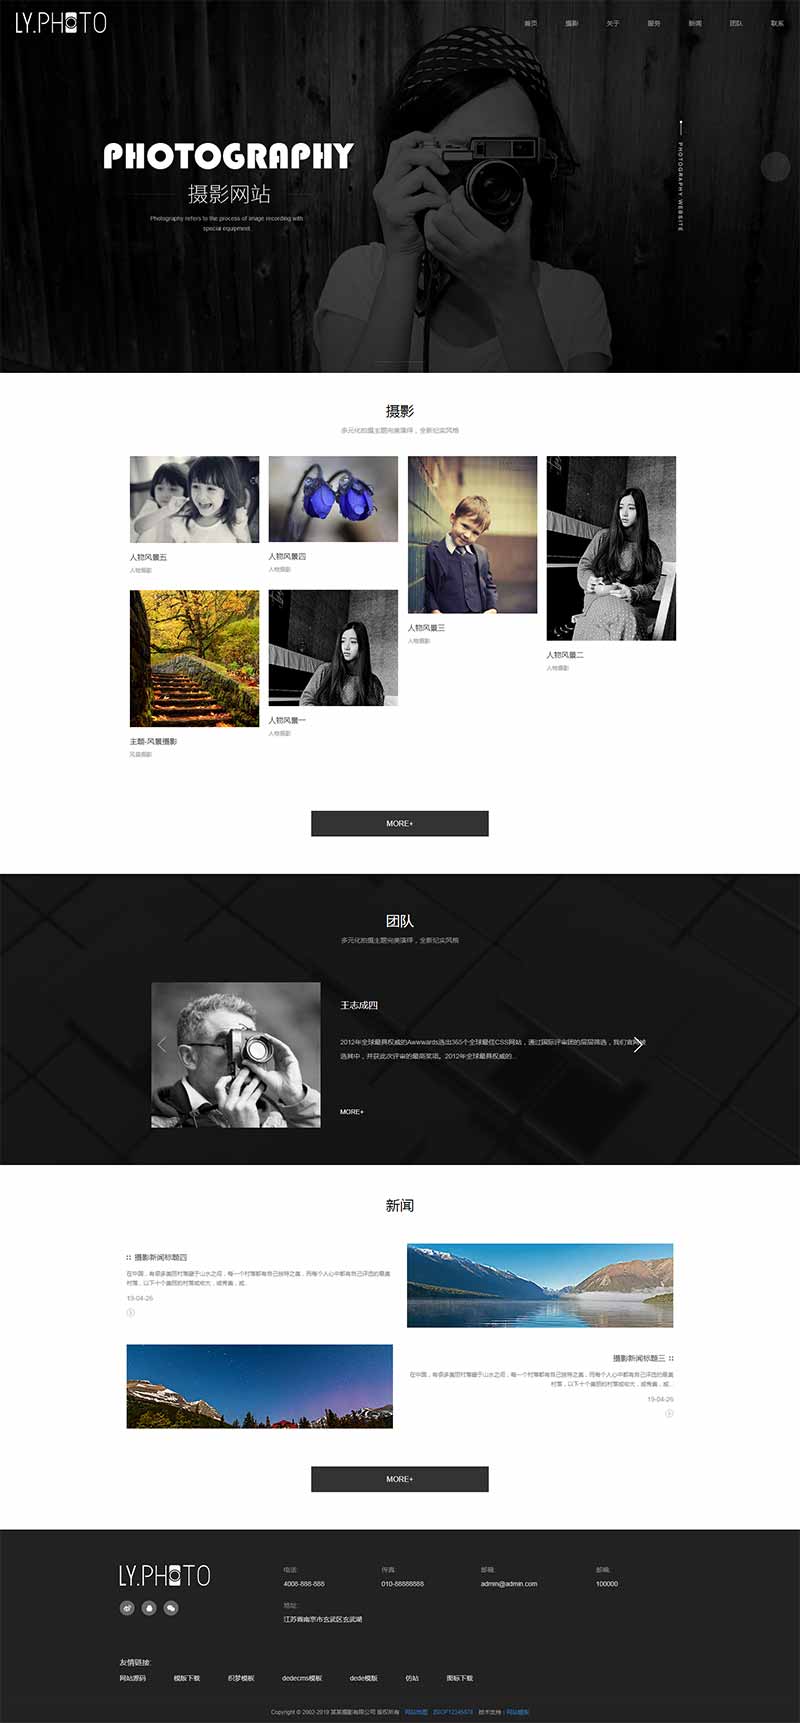 黑色风景摄影工作室网站模板 个人写真拍照网站源码下载